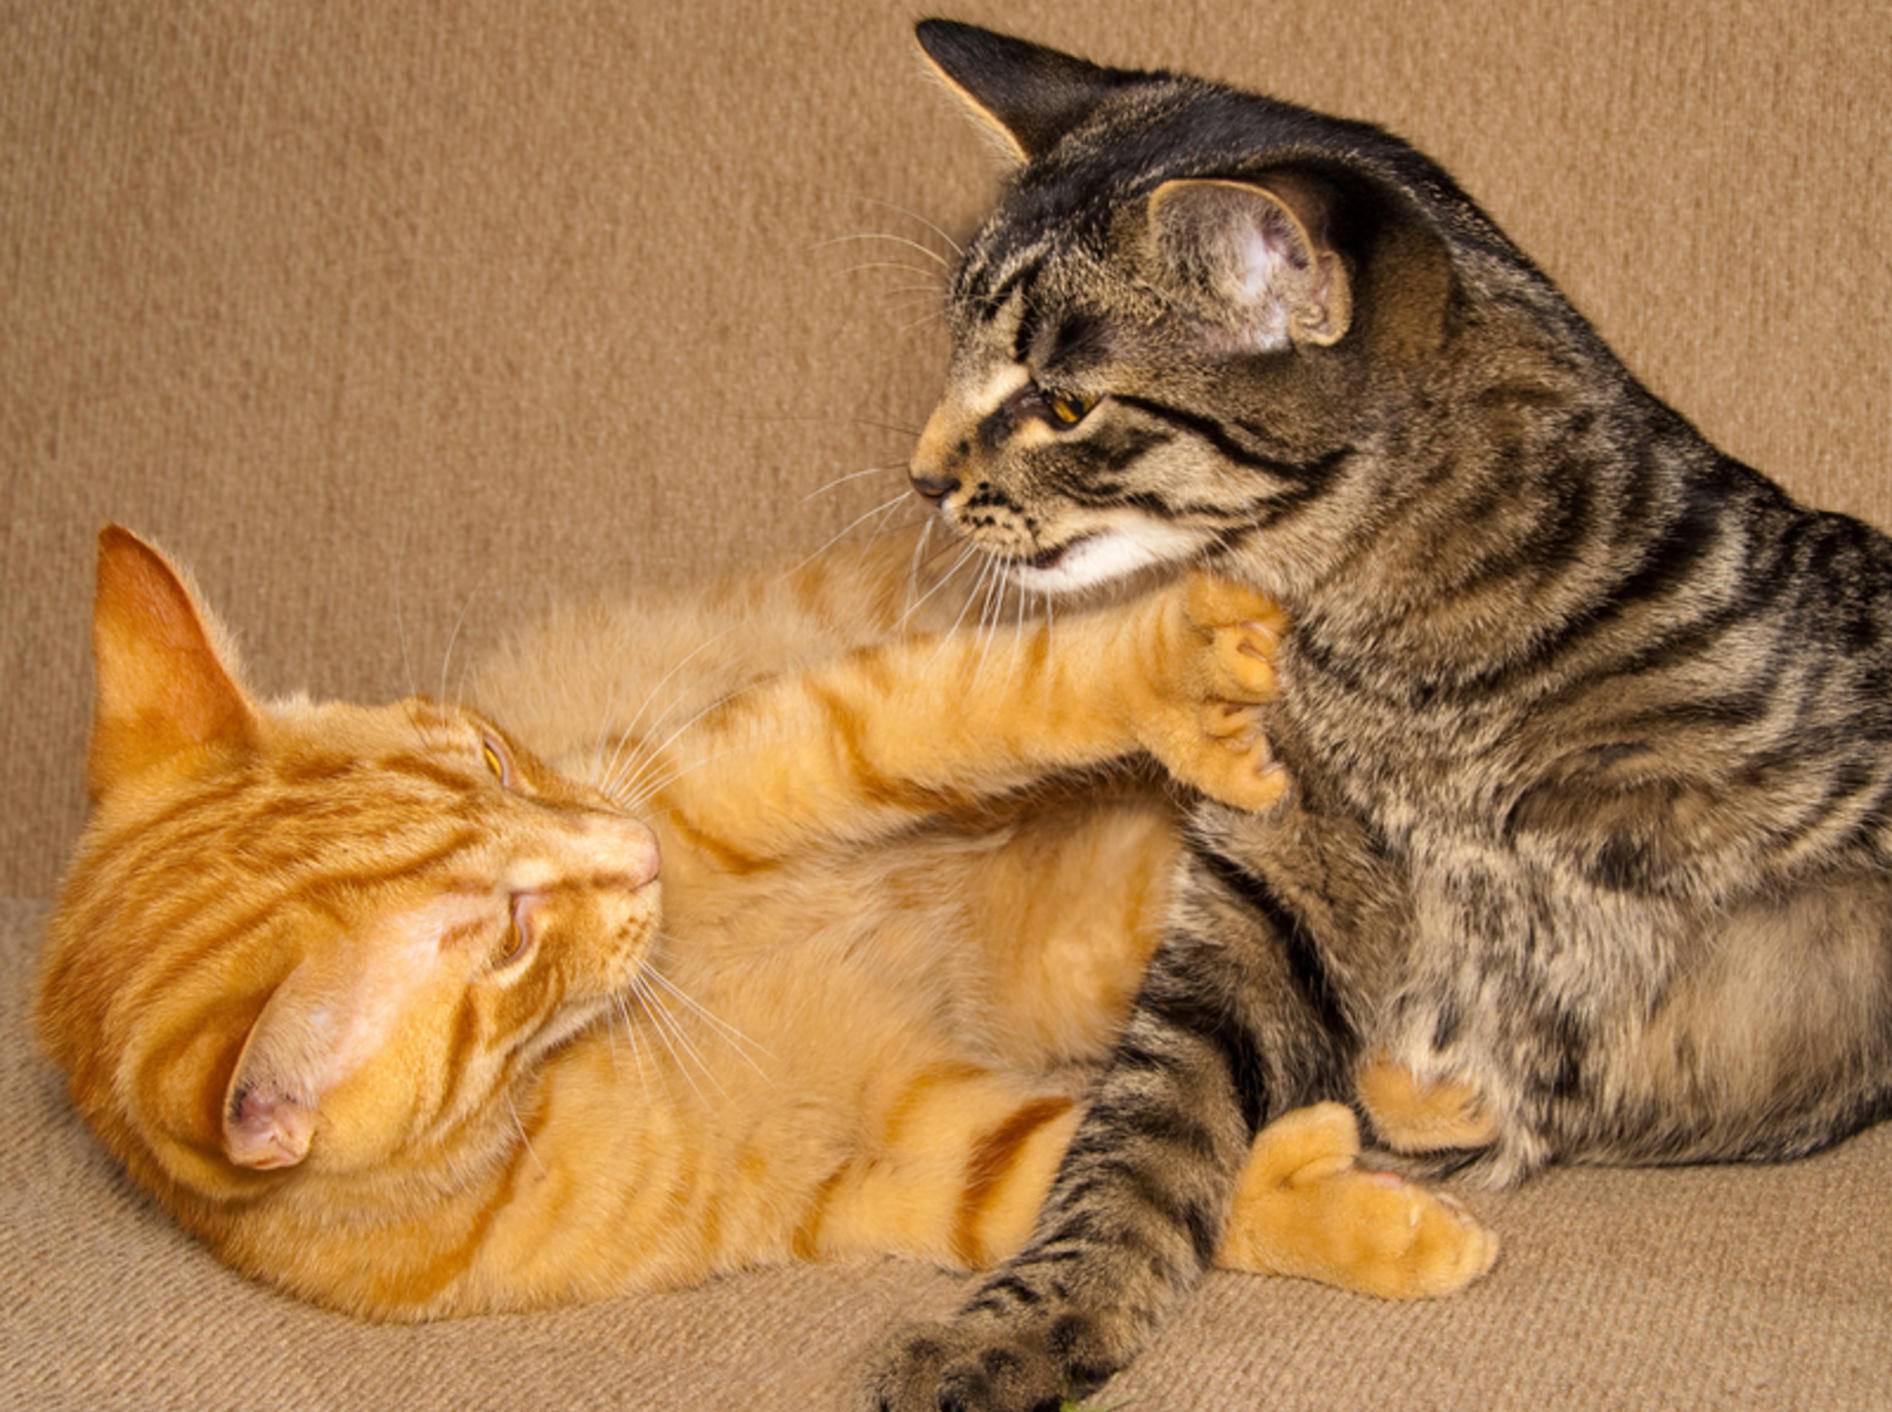 Ständige Attacken auf den Artgenossen: Auch unter Katzen gibt es Mobbing – Bild: Shutterstock / karamysh